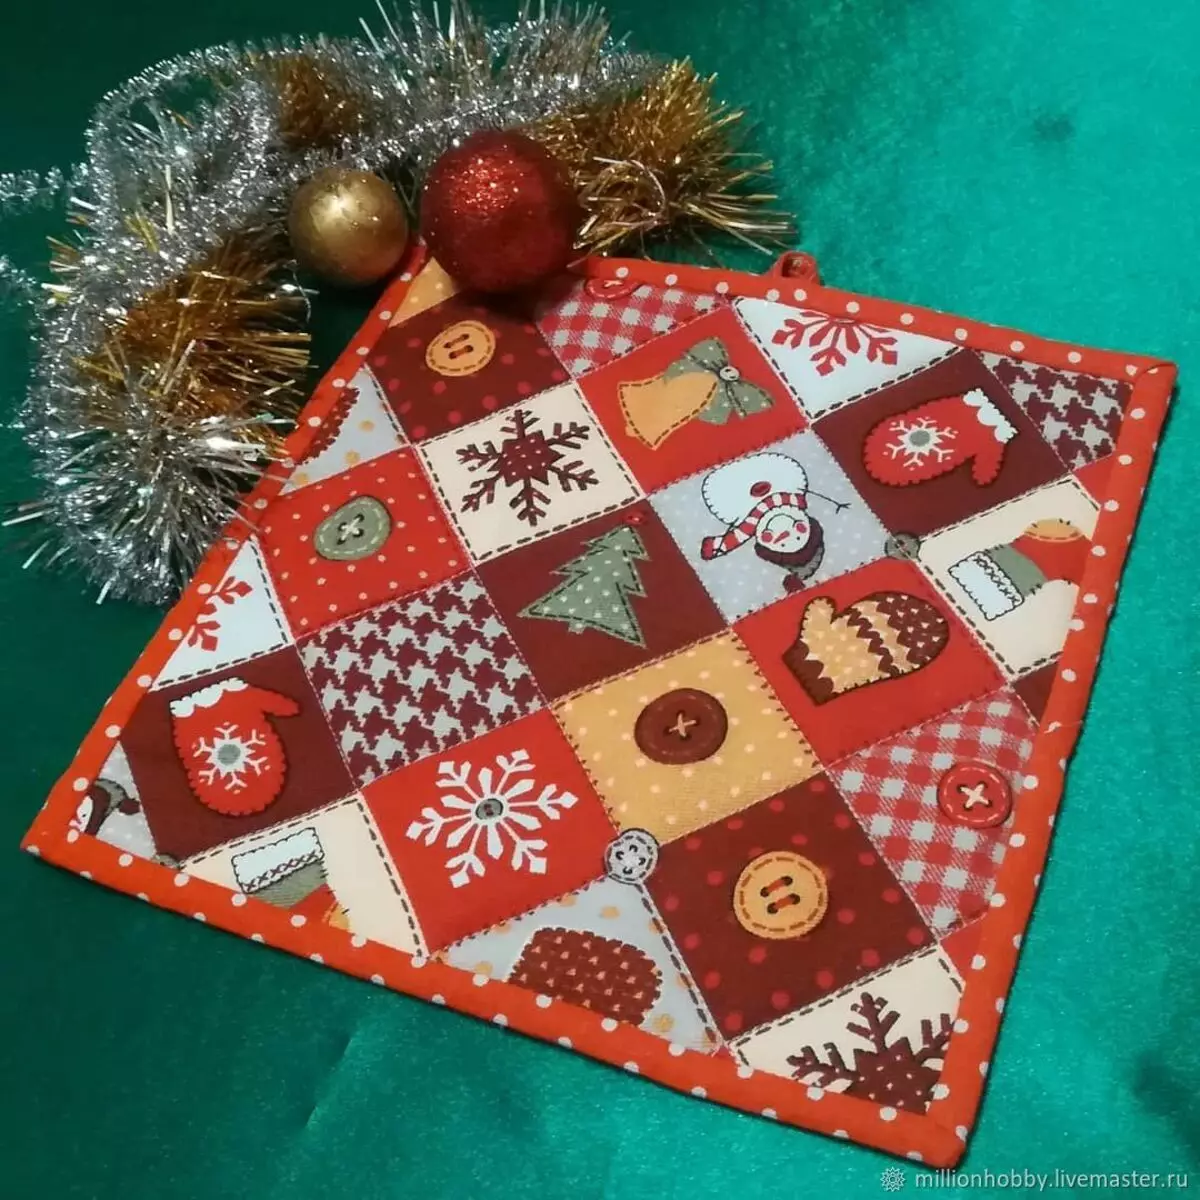 برچسب های سال نو: نوار های بافتنی برای سال جدید و در سبک پچک، برچسب آشپزخانه با یک درخت کریسمس و با نمادهای دیگر، دستکش های زیبا 21793_20